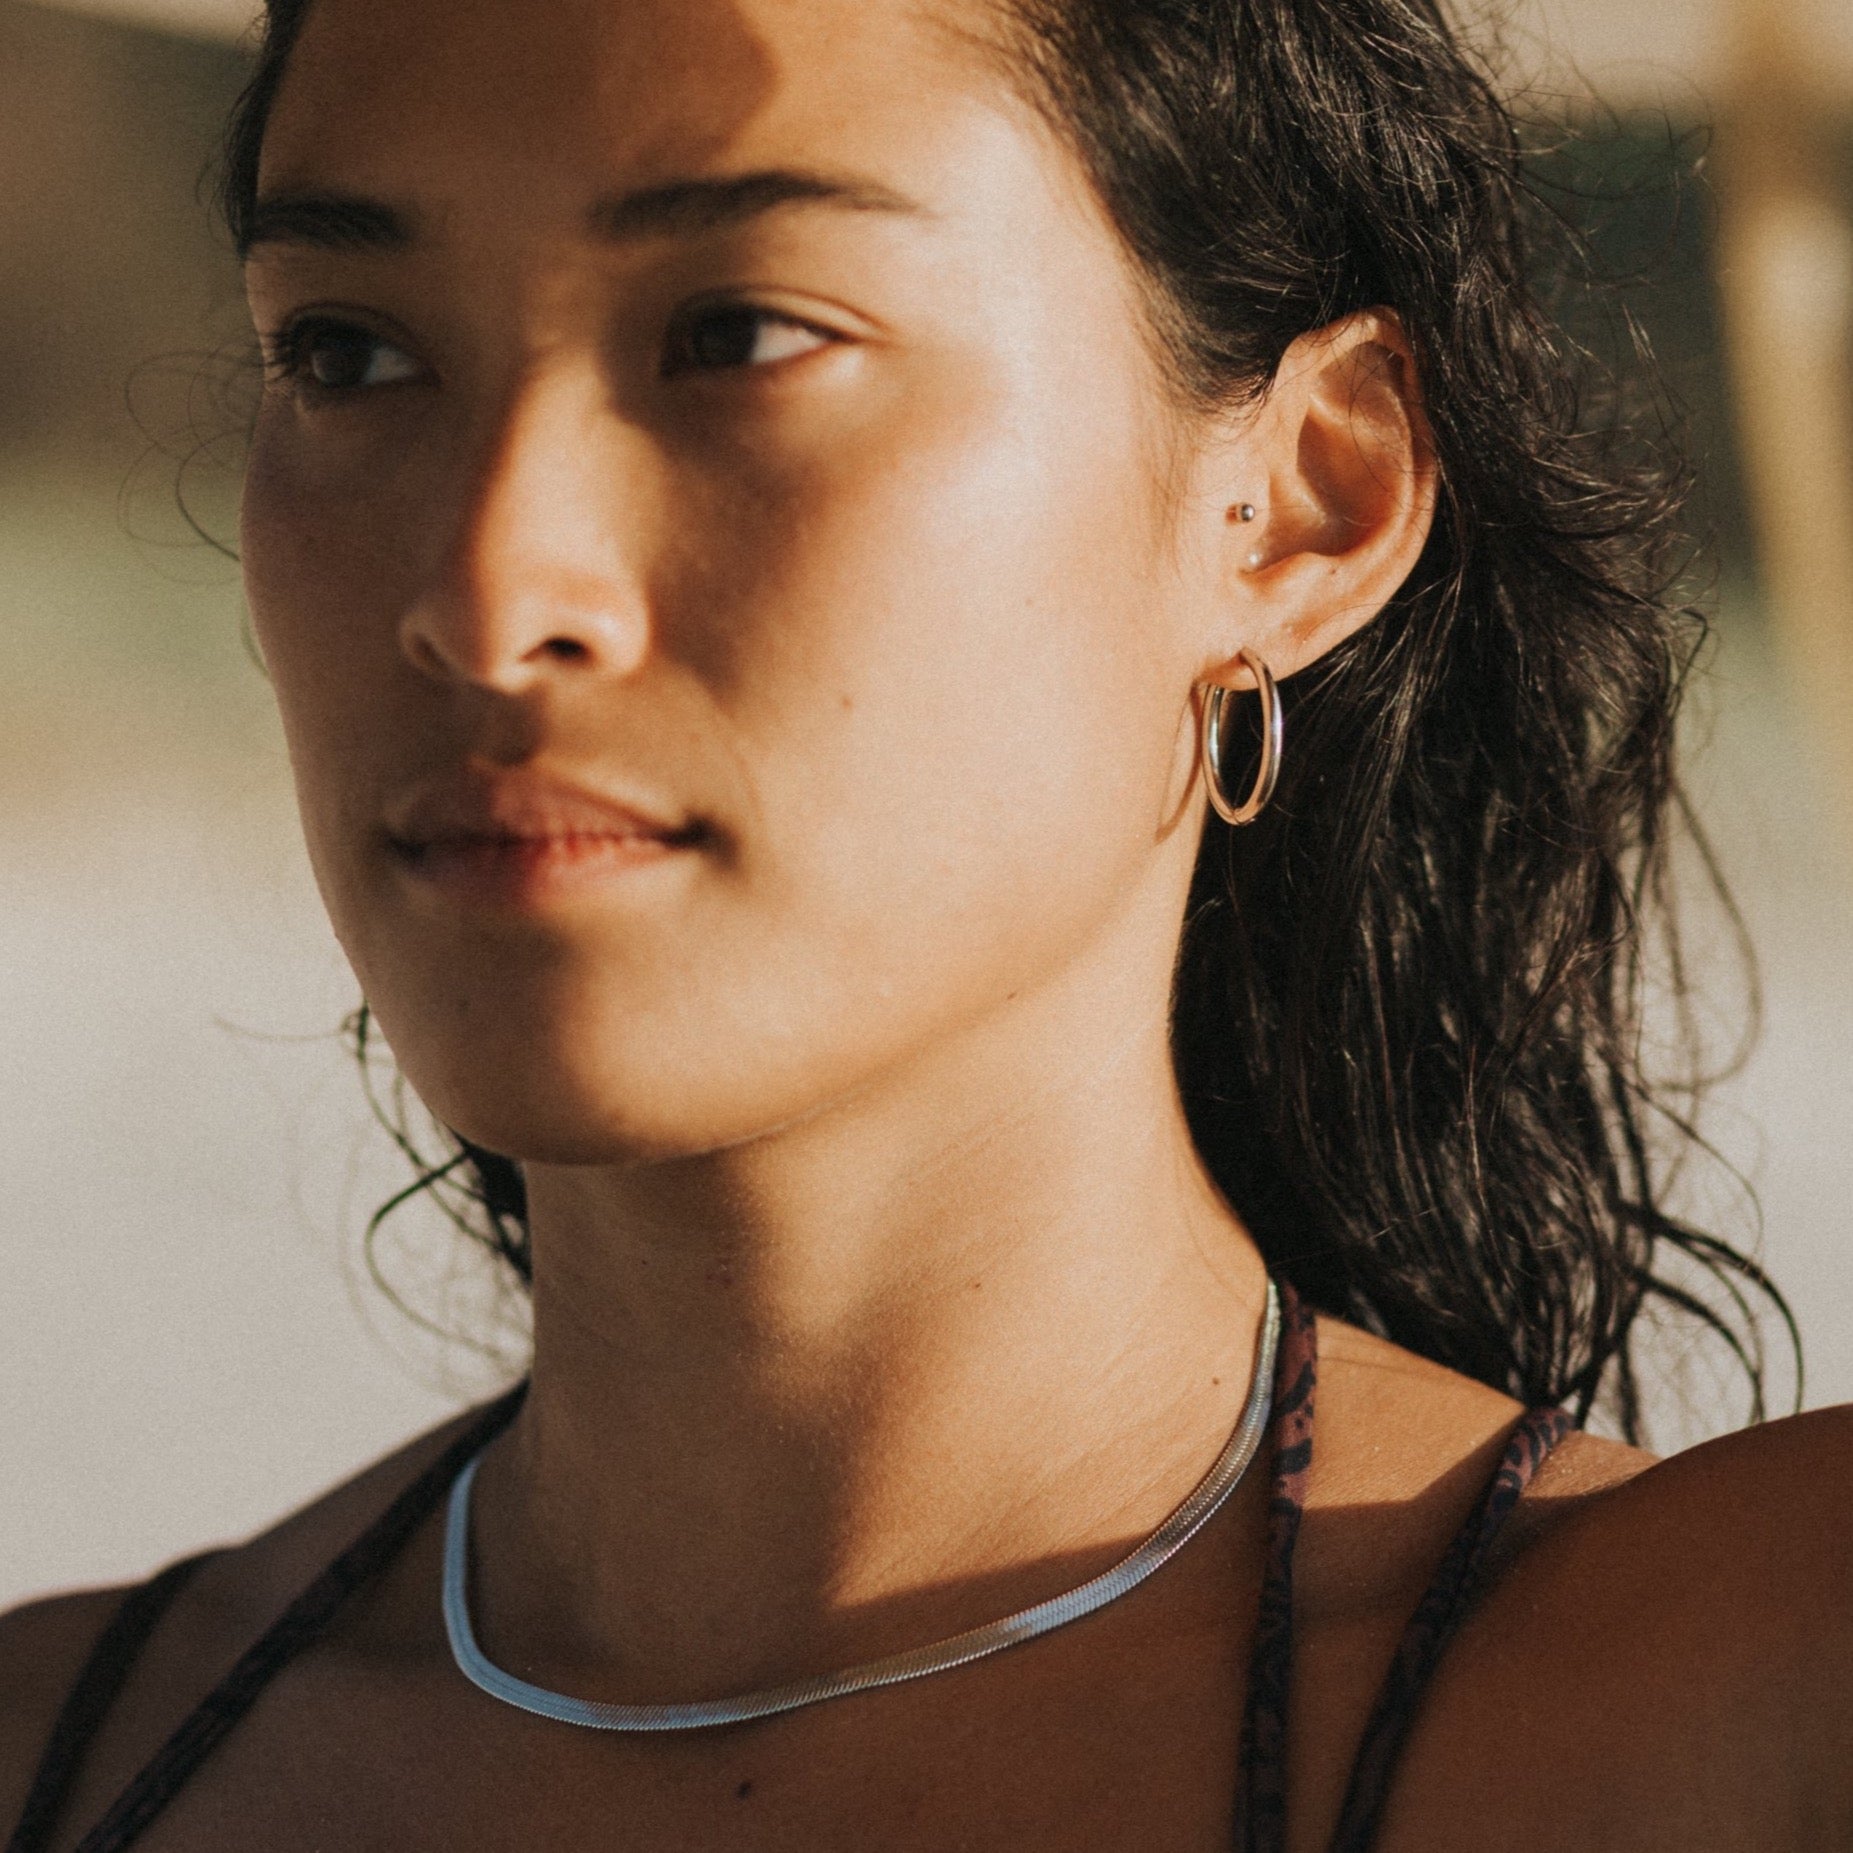 surfer girl wearing silver waterproof jewelry lore of the sea